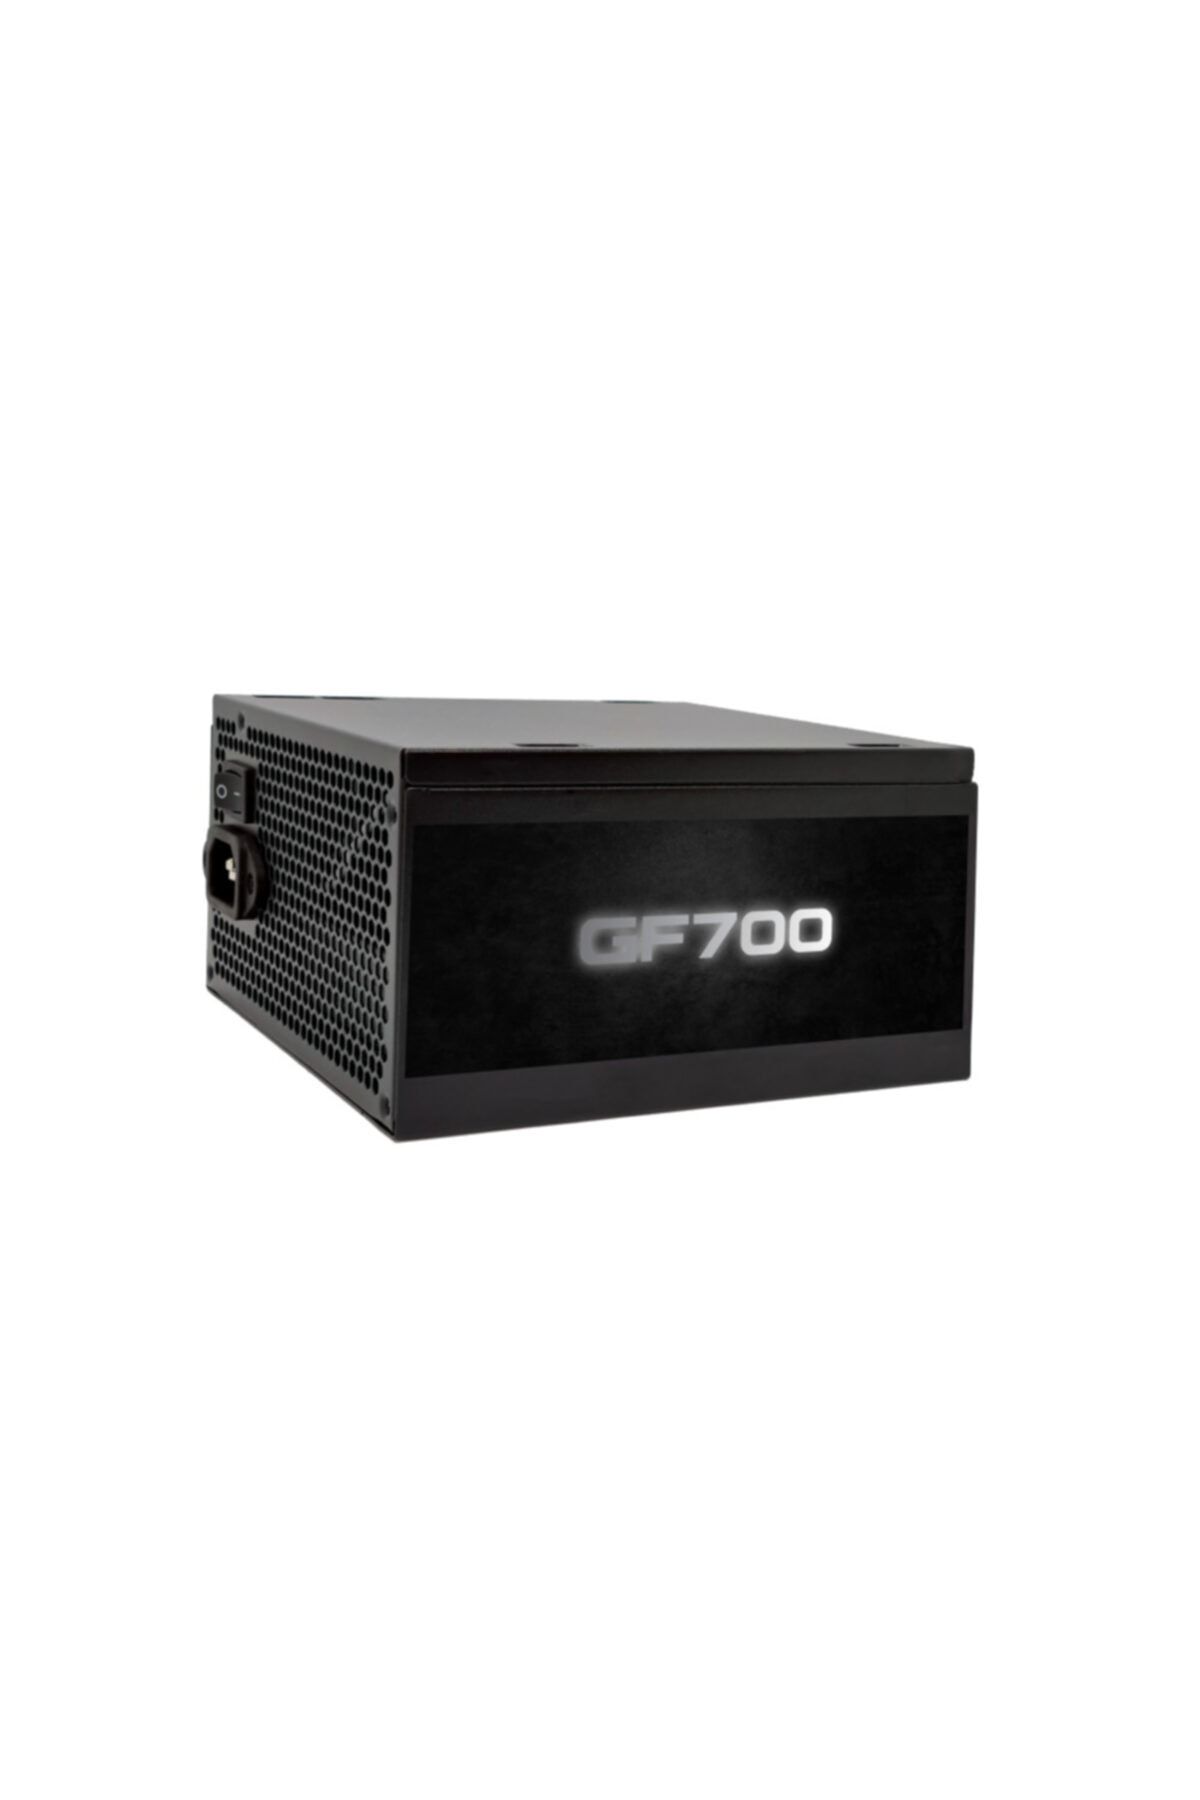 GAMEFORCE Gf700 700w 80+ Bronz Sertifikalı Güç Kaynağı